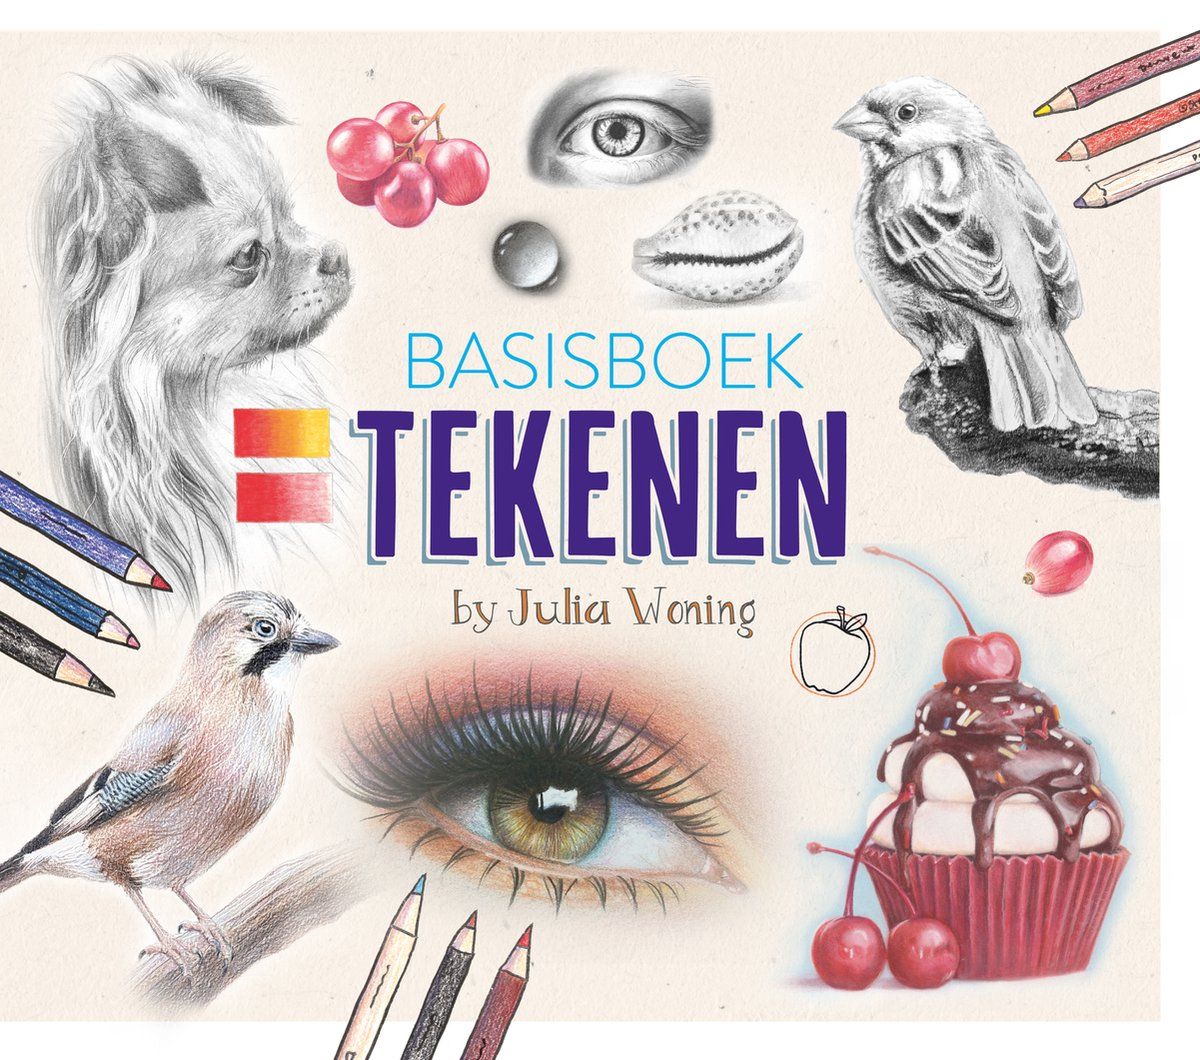 Basisboek Tekenen door Julia Woning, nu te koop bij Kunstburg.nl in Neede